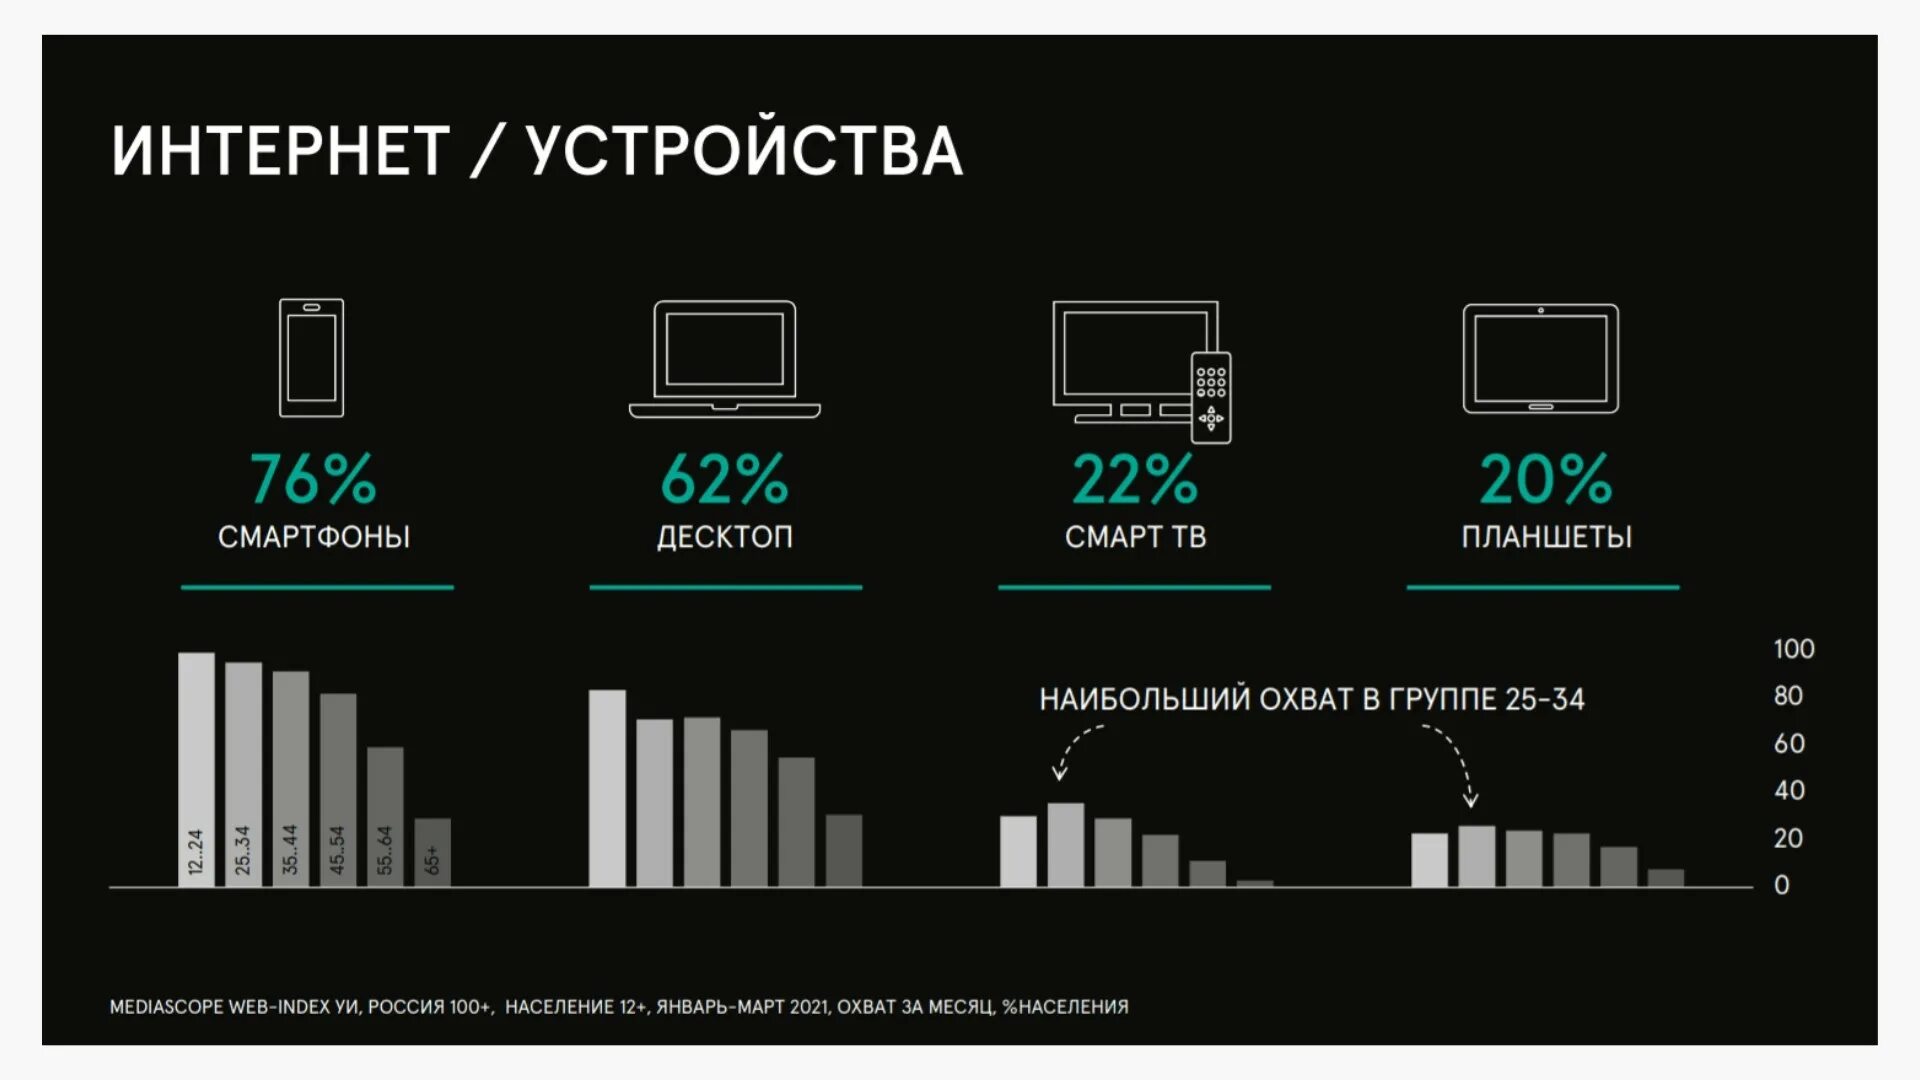 Российская сеть 2021. Network b2b.